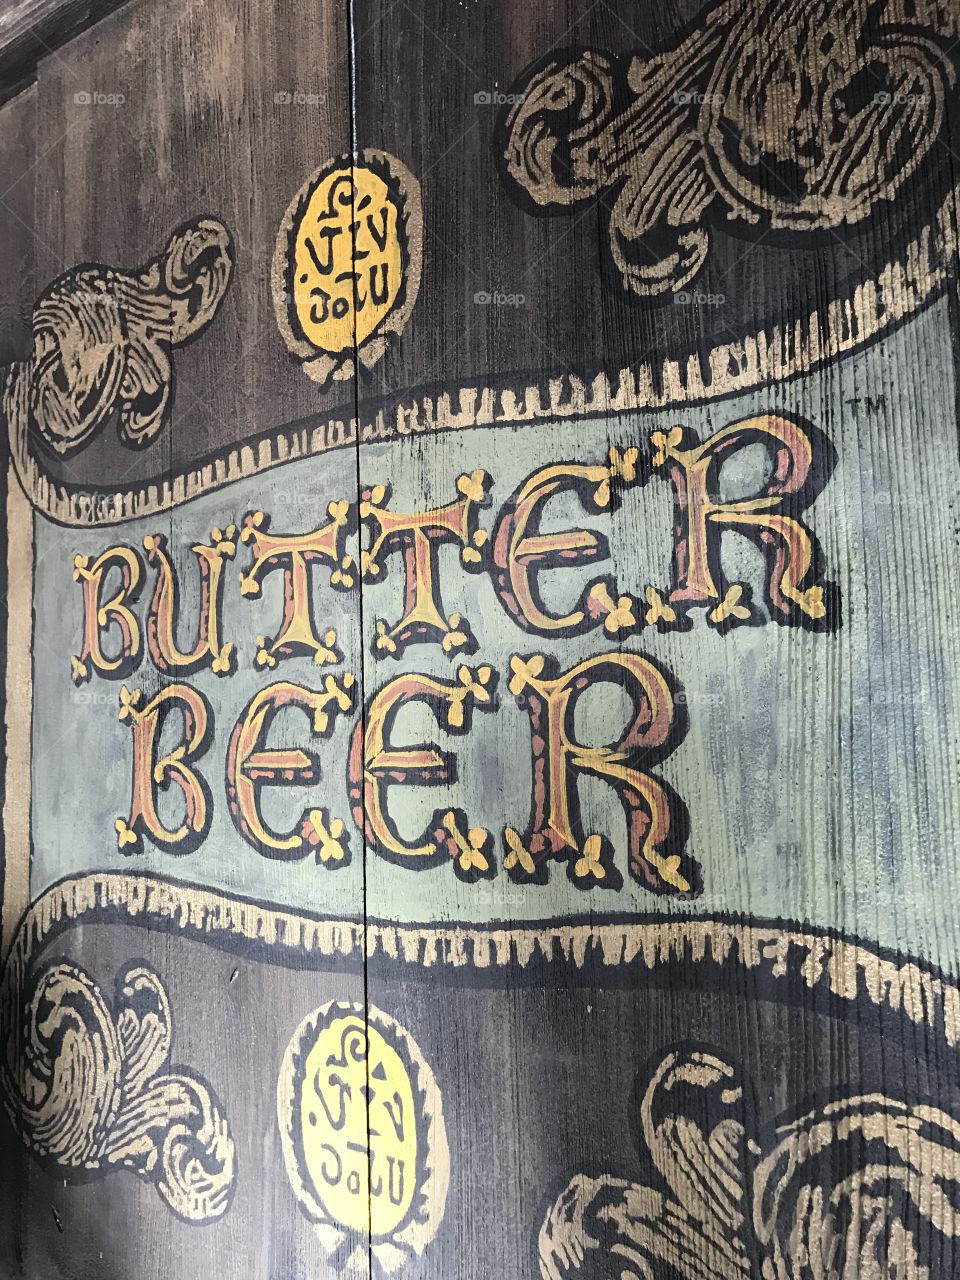 Butter Beer Wizarding World of Harry Potter Universal Studios Orlando FL  Islands of Adventure